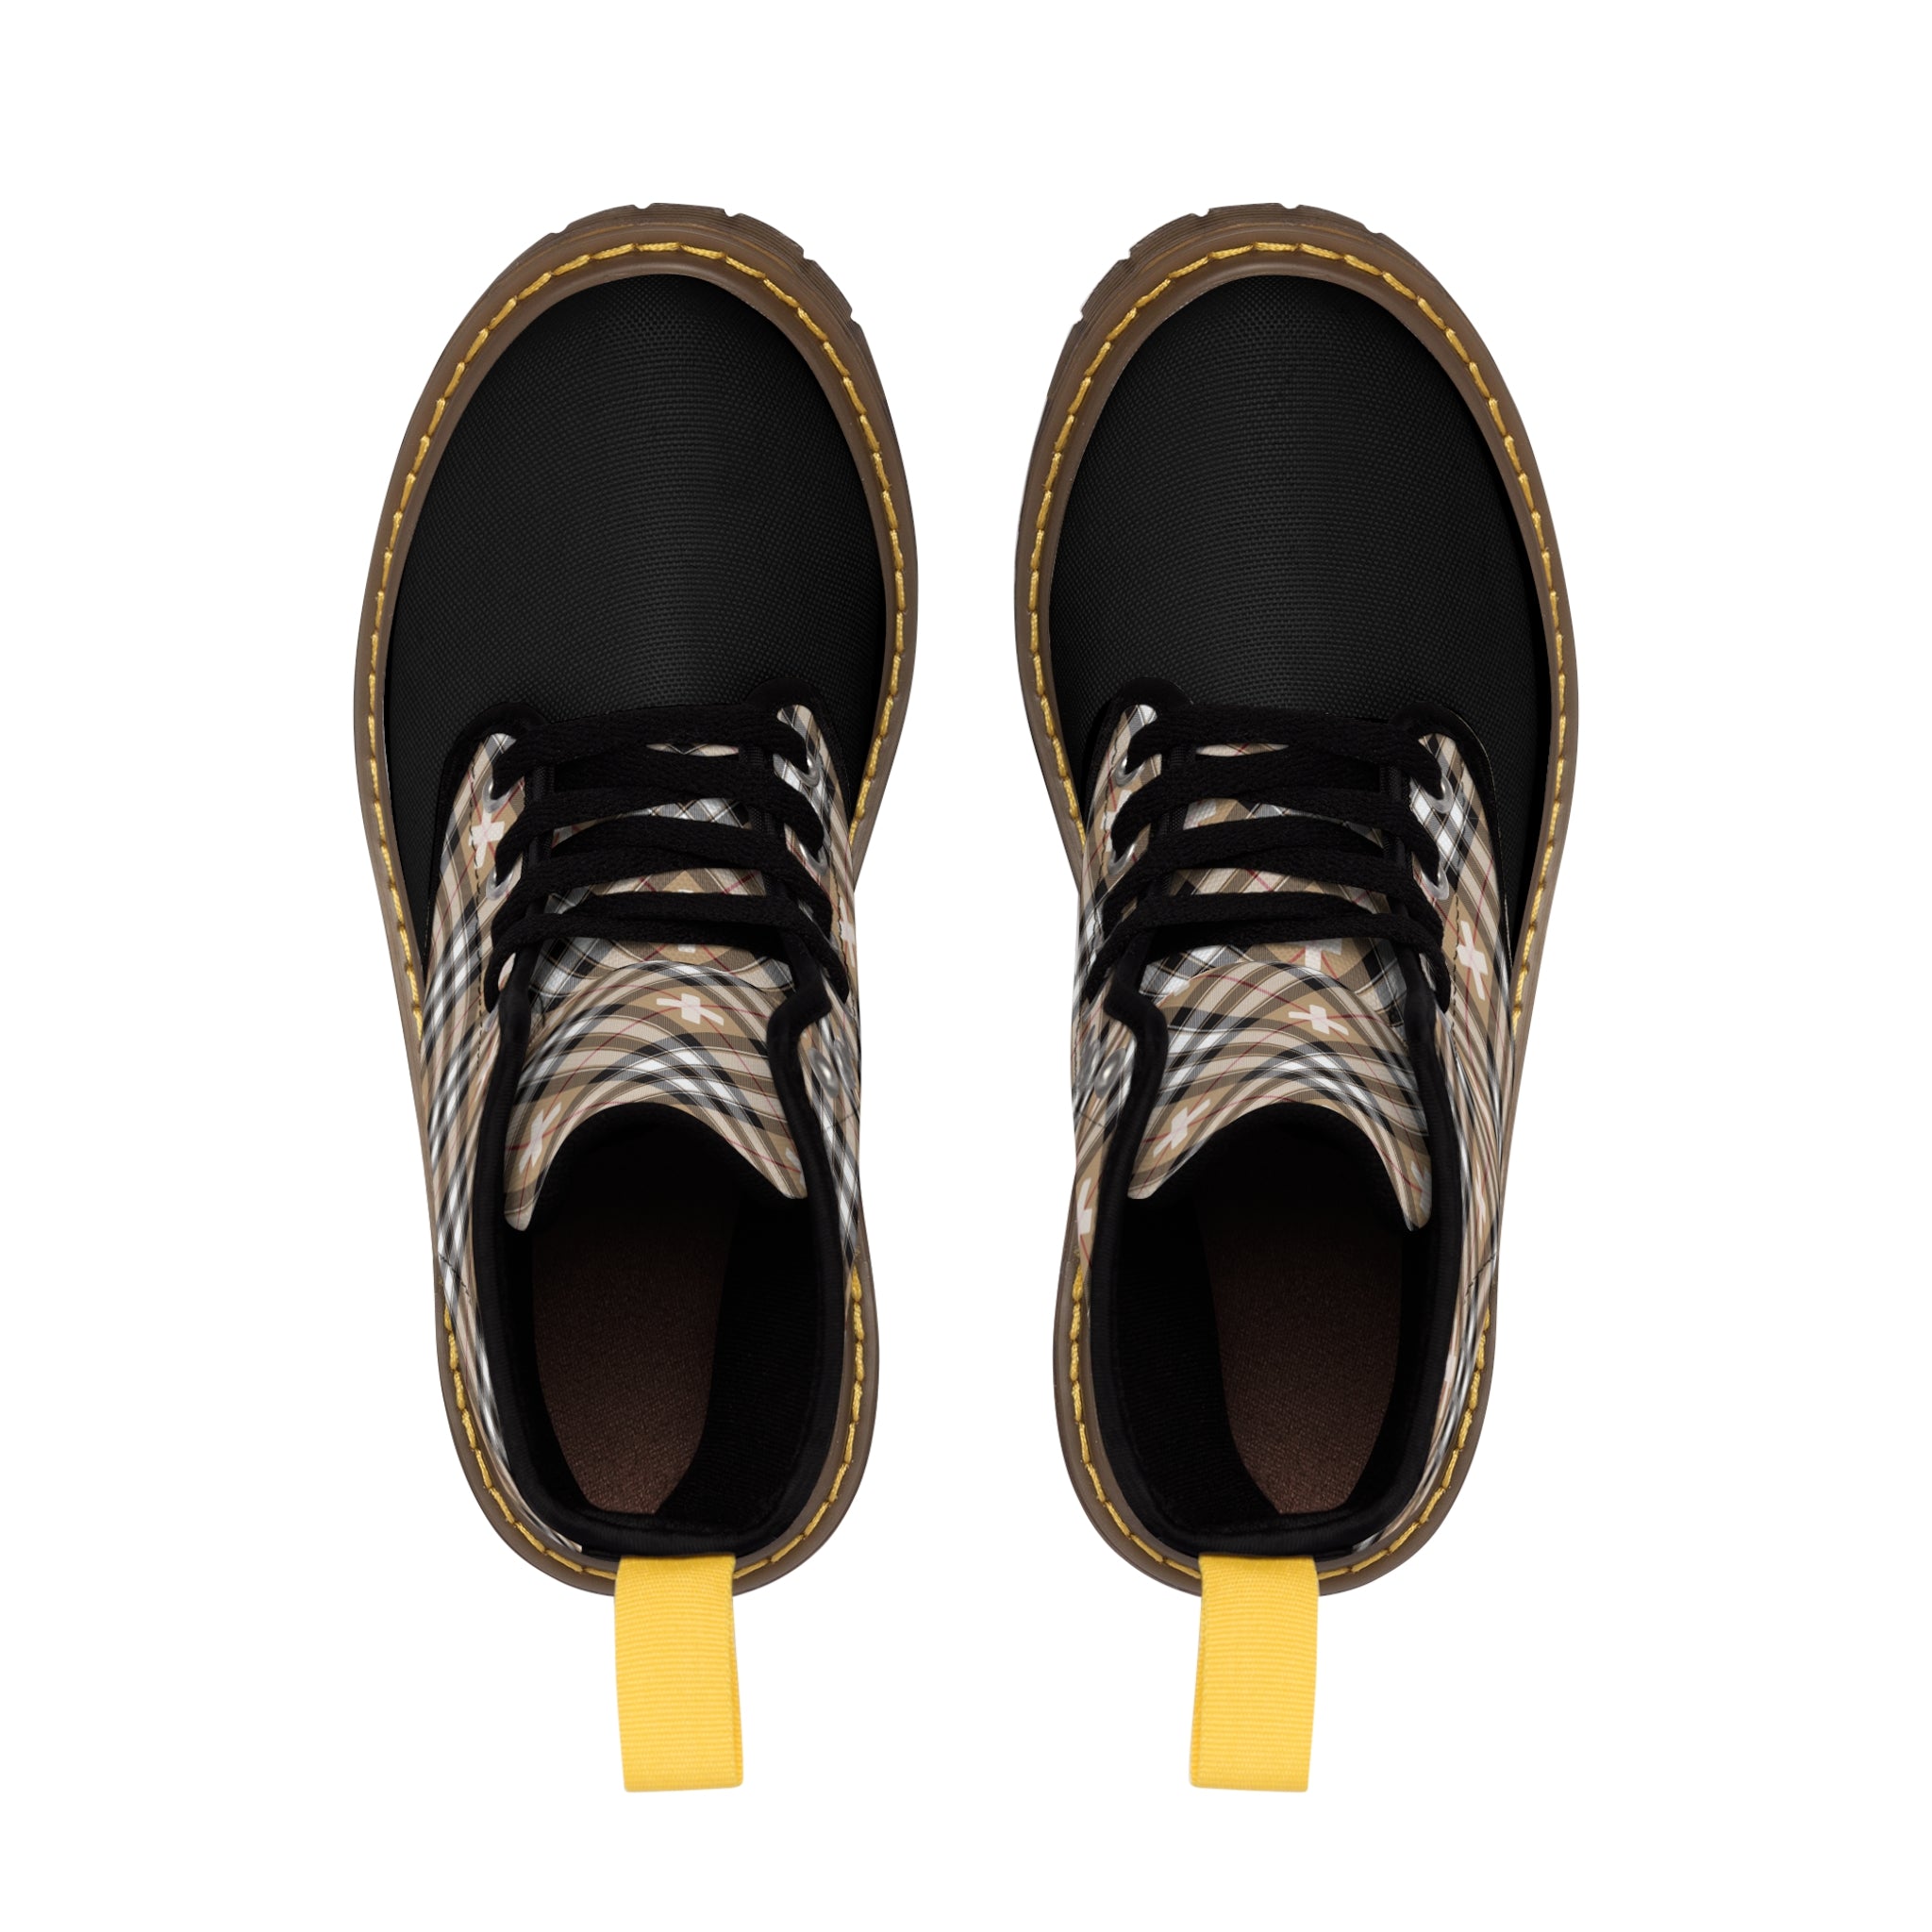  Beige Plaid (Plus Sign) Black Toe Women's Canvas Boots Shoes